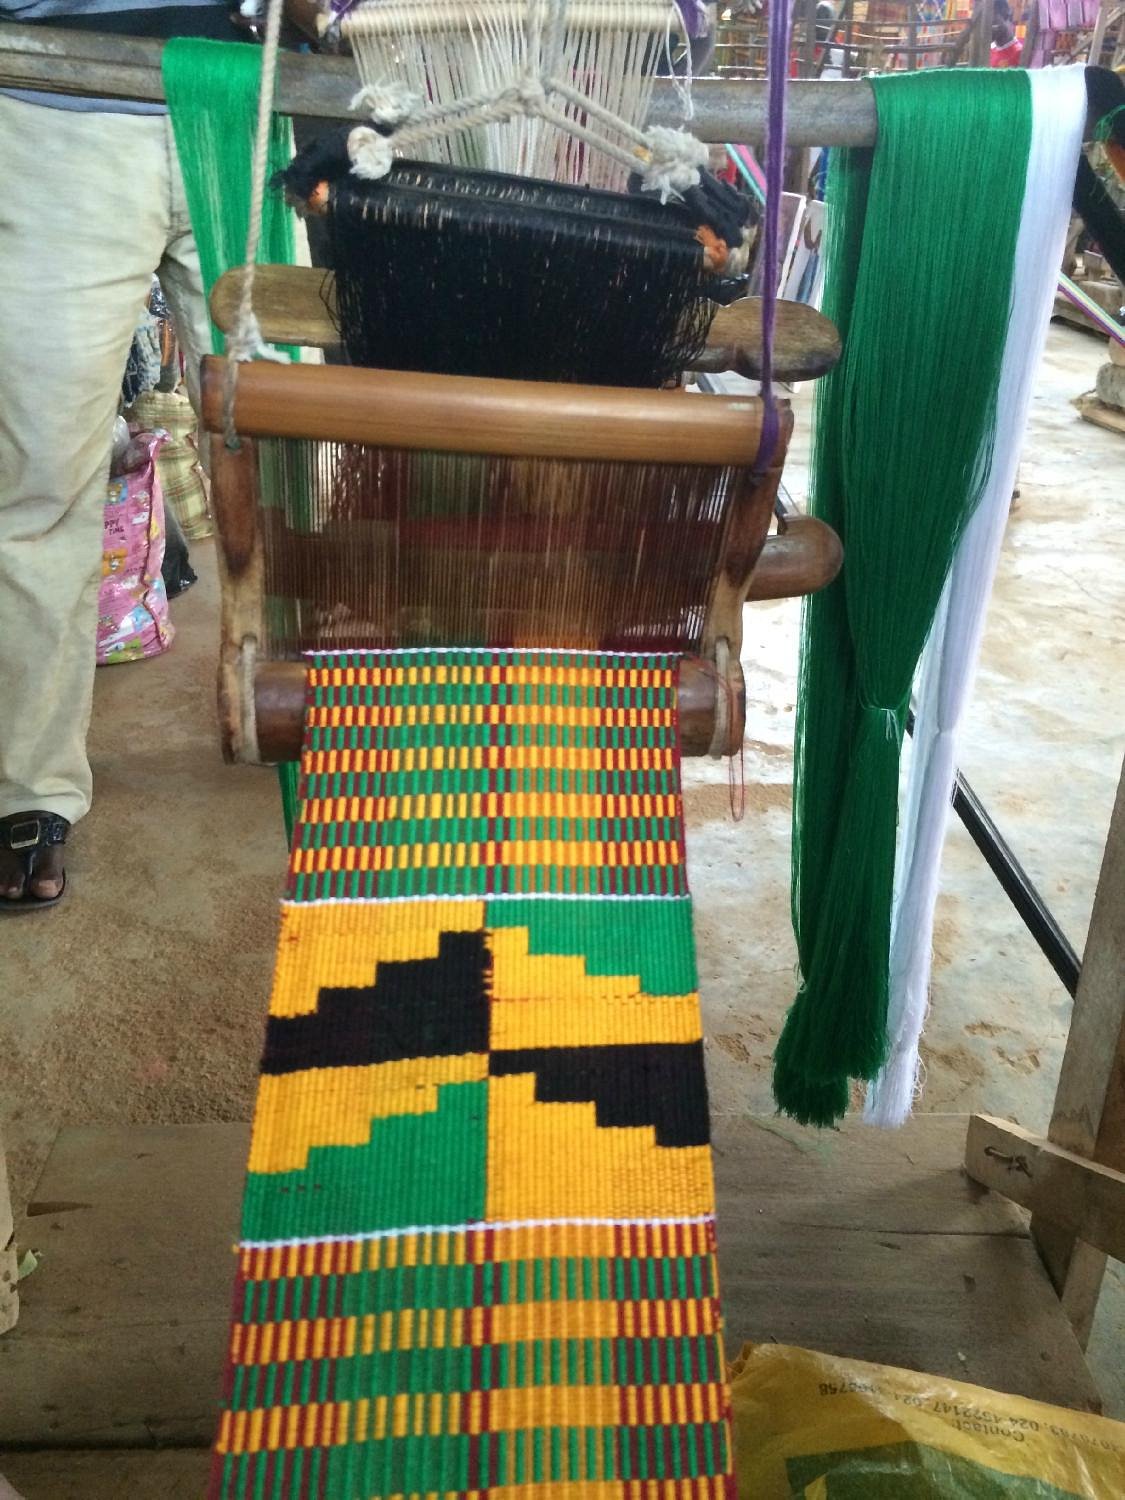 Weaving Kente Cloth in Ghana